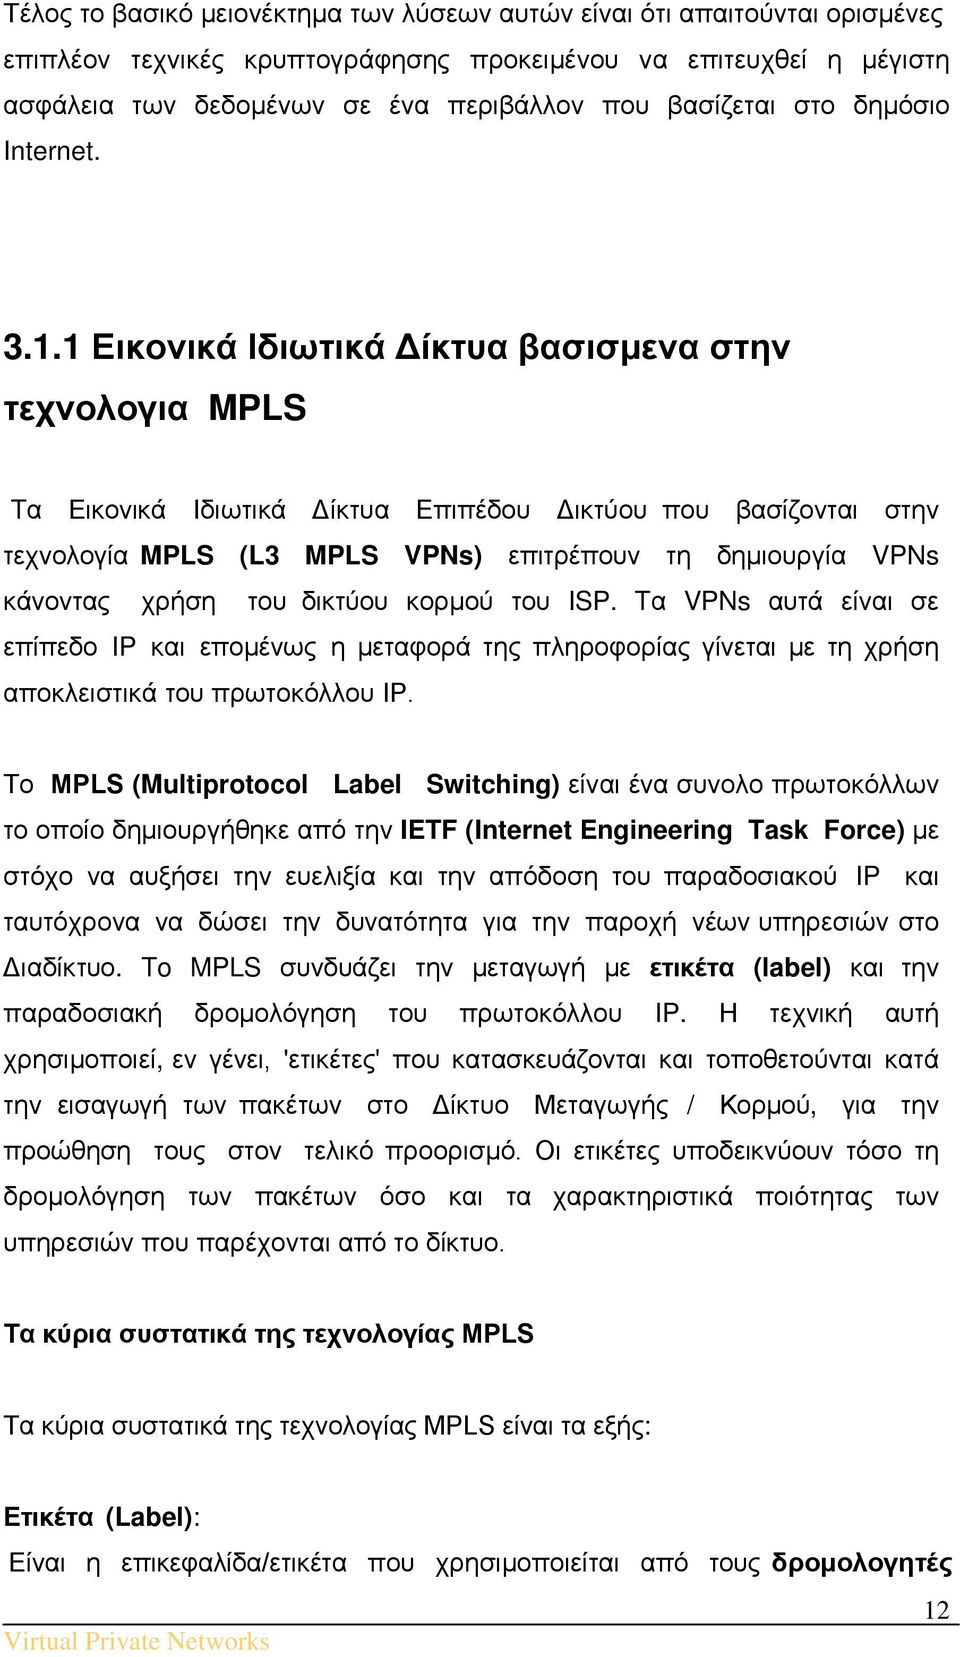 1 Εικονικά Ιδιωτικά Δίκτυα βασισμενα στην τεχνολογια MPLS Tα Εικονικά Ιδιωτικά Δίκτυα Επιπέδου Δικτύου που βασίζονται στην τεχνολογία MPLS (L3 MPLS VPNs) επιτρέπουν τη δημιουργία VPNs κάνοντας χρήση